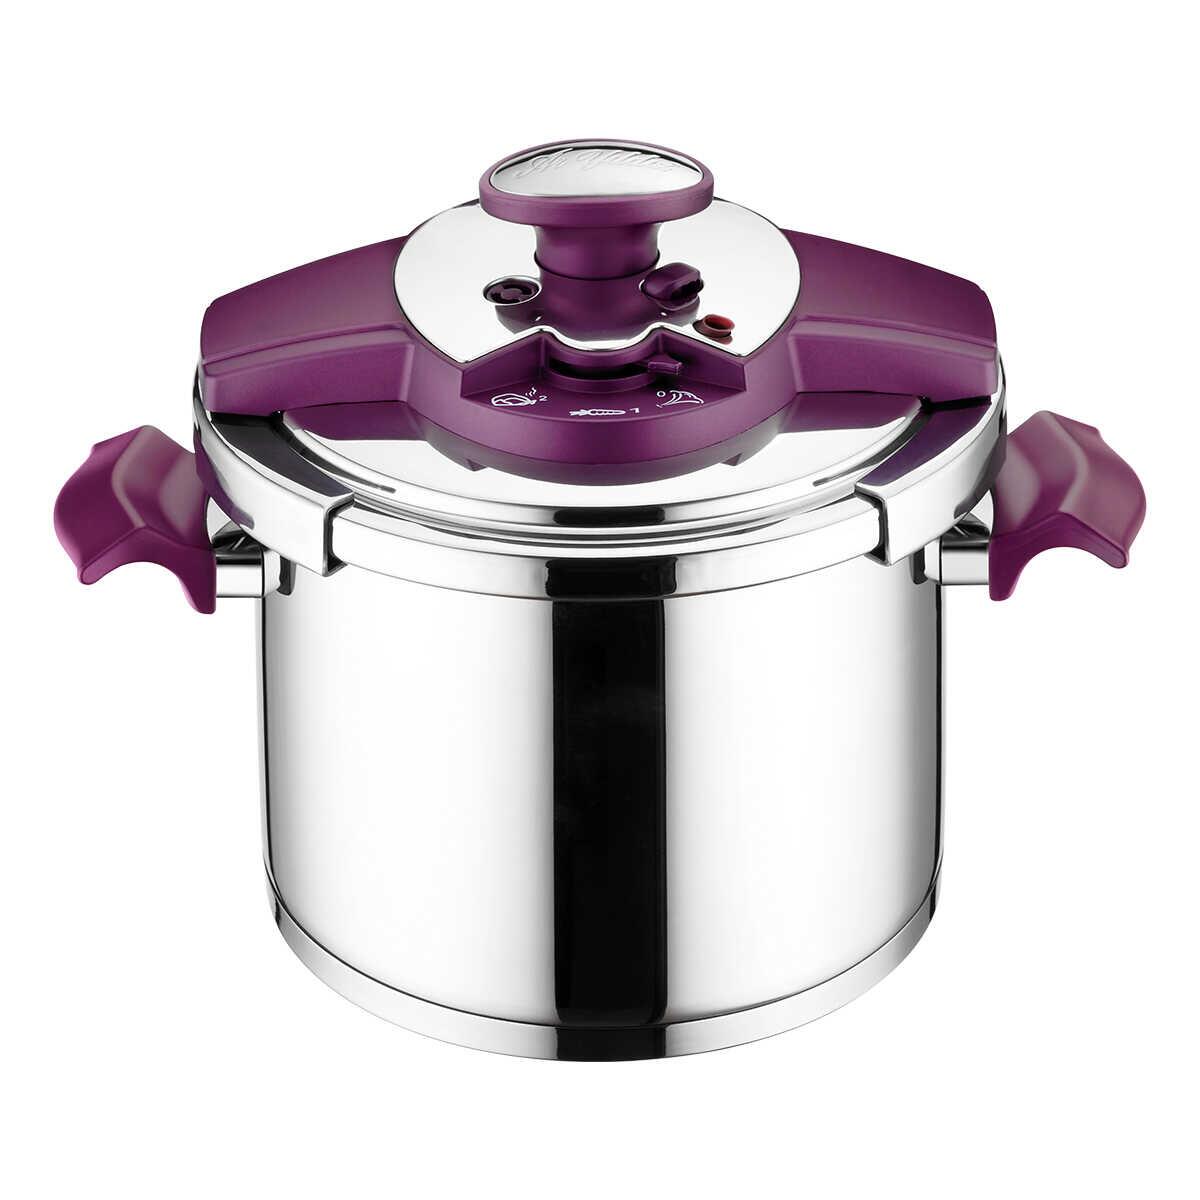 Aryıldız Milano Purple 5.5 Lt Pressure Cooker